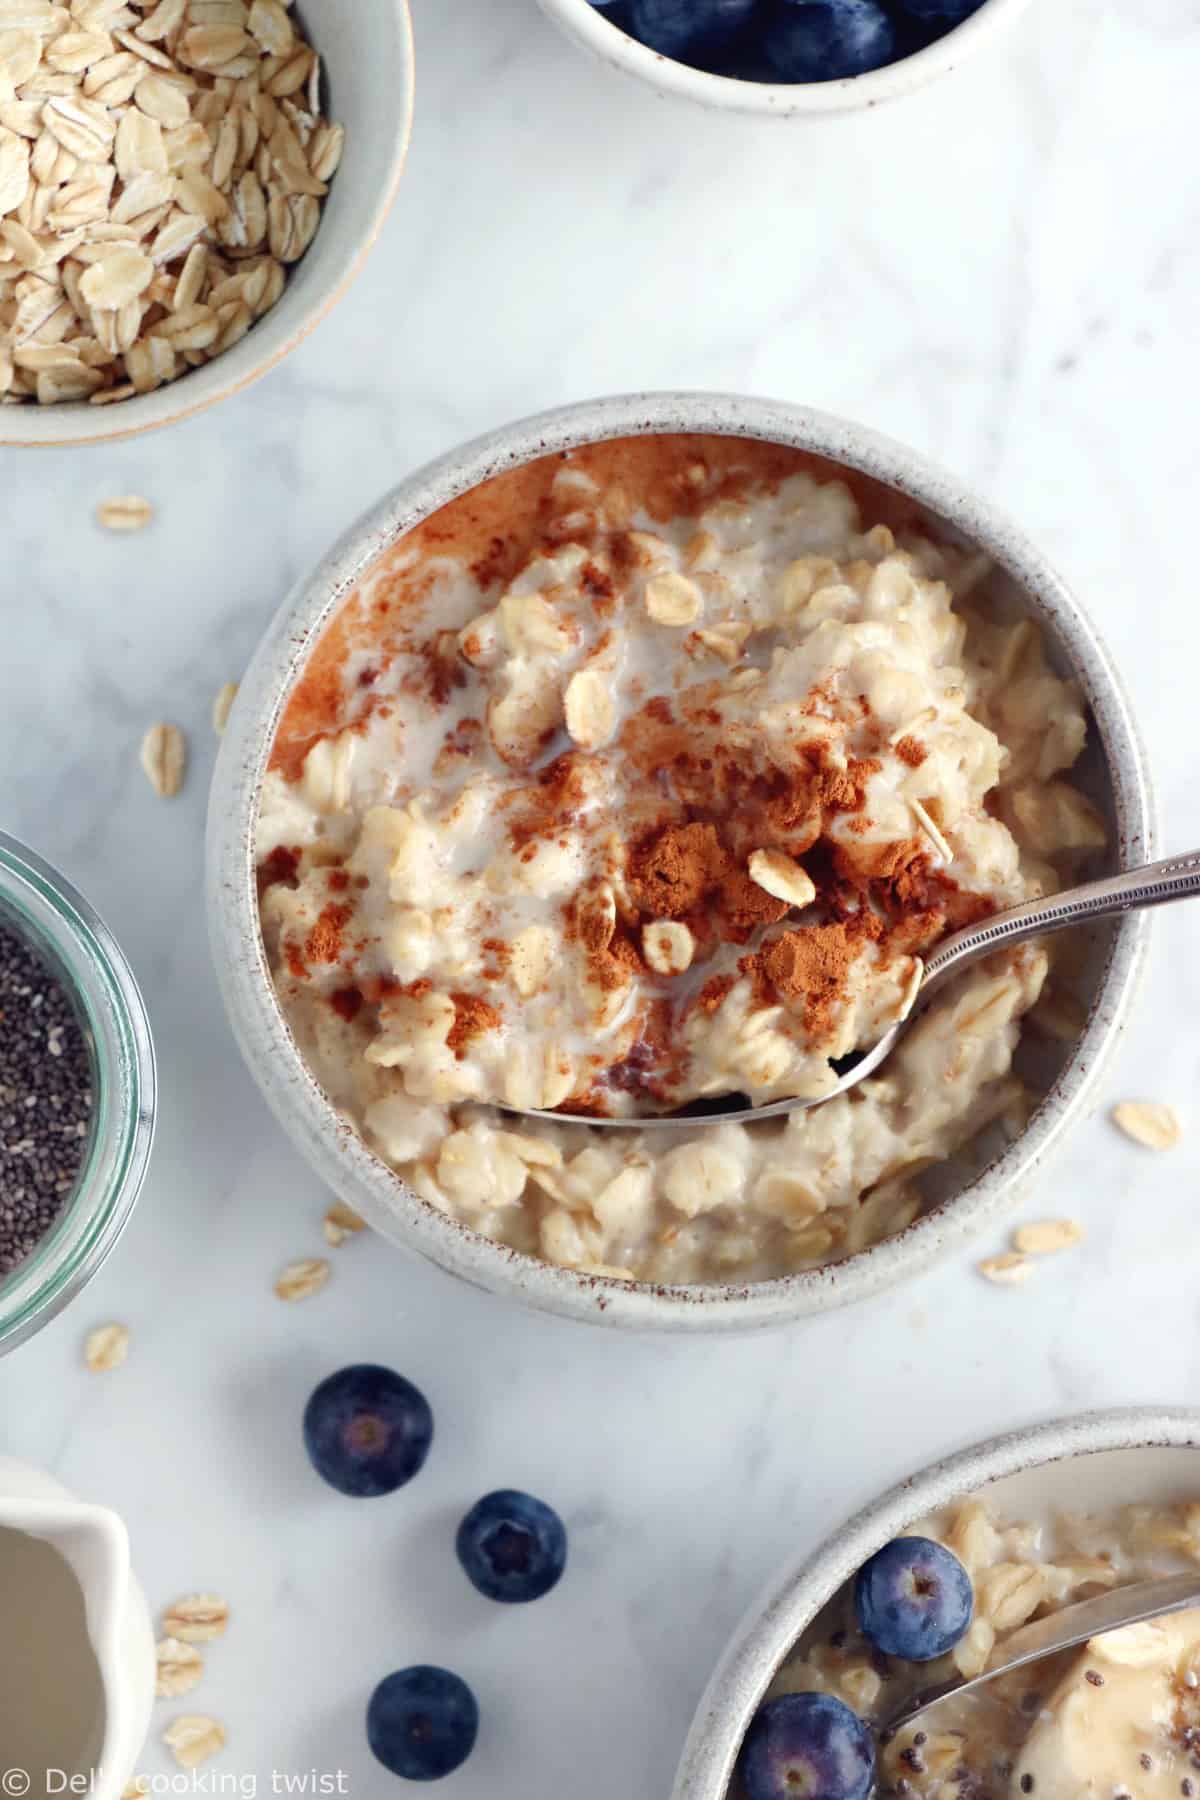 Apprenez à réaliser la vraie recette du porridge. Avec seulement 2 ingrédients et quelques minutes de préparation, vous obtenez un délicieux porridge aux flocons d'avoine.